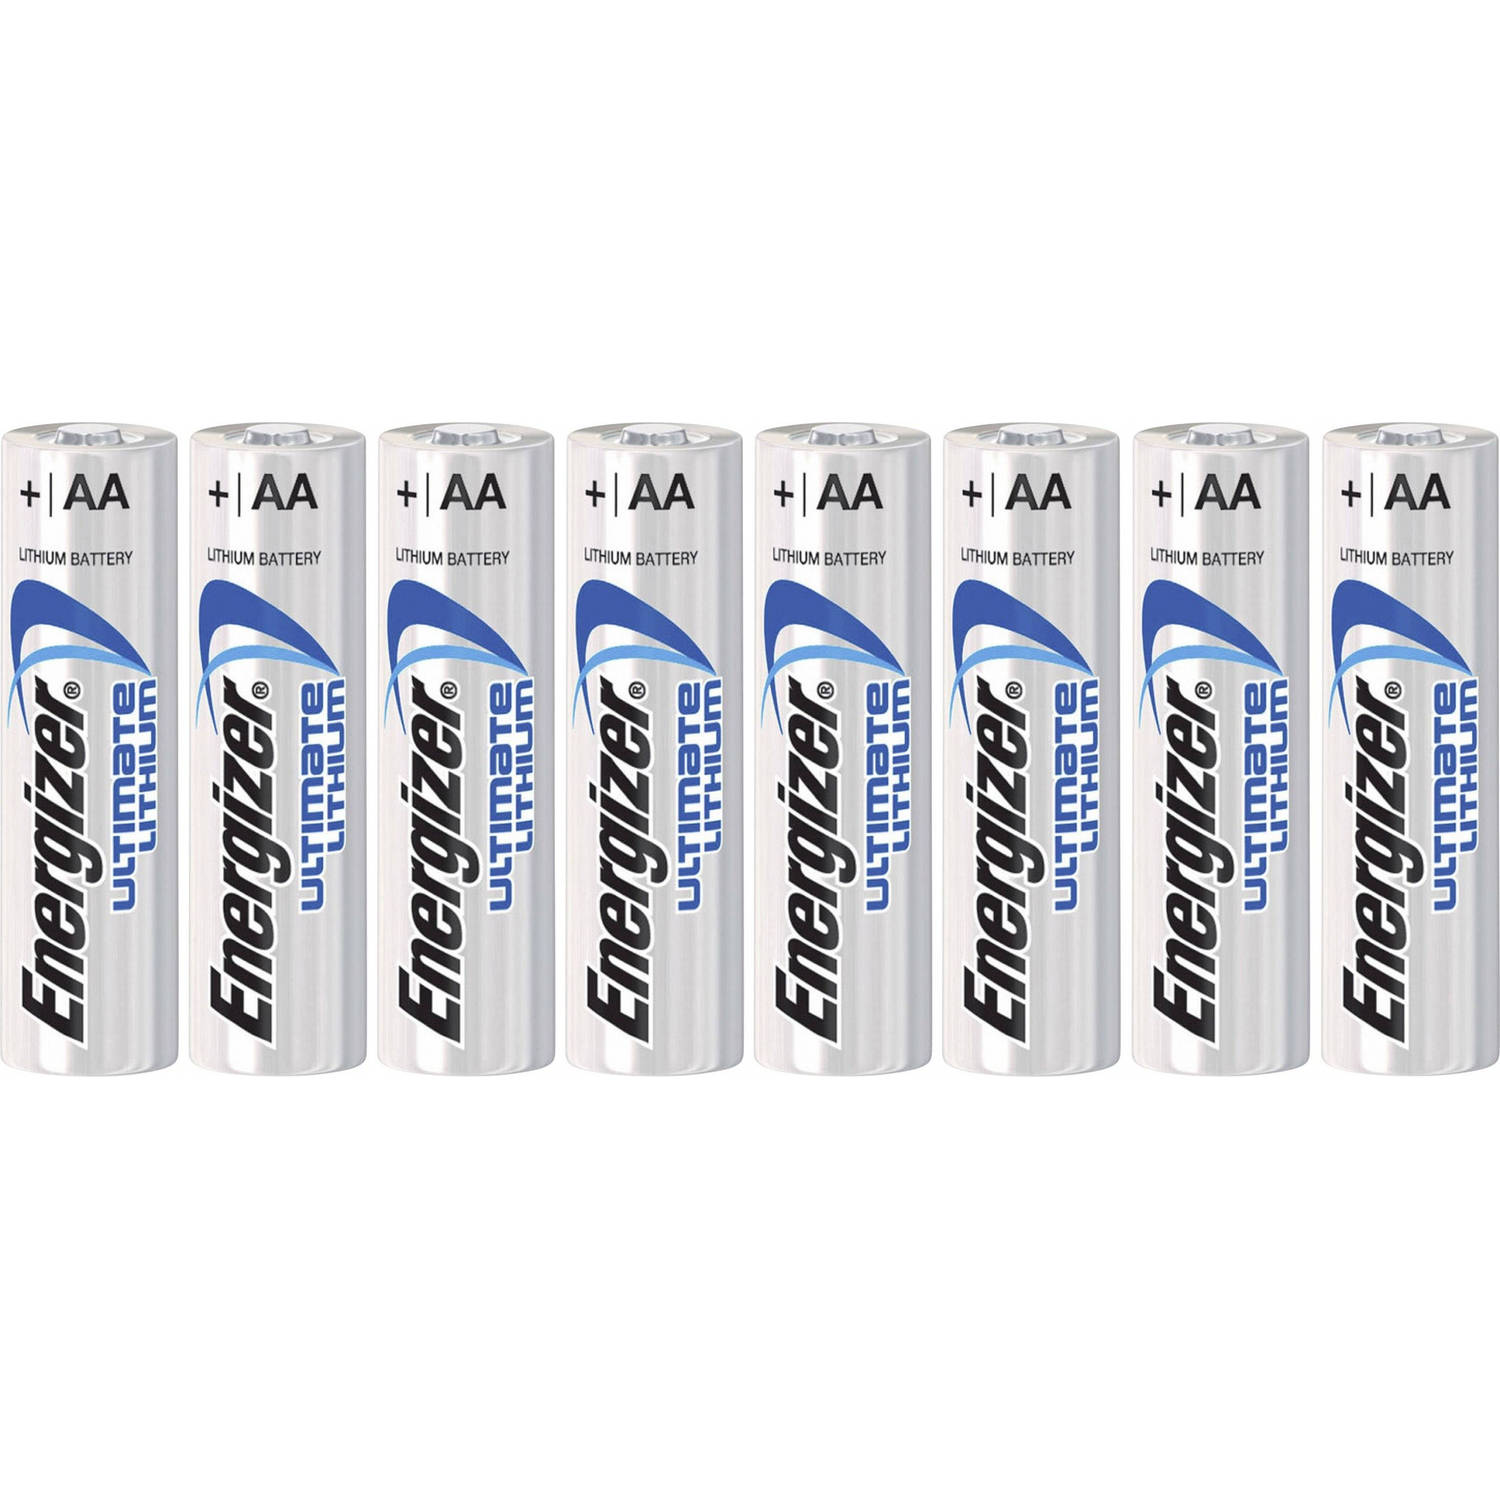 Tijdens ~ bundel ik ben slaperig Energizer batterijen Ultimate Lithium FR6 AA 10 stuks | Blokker